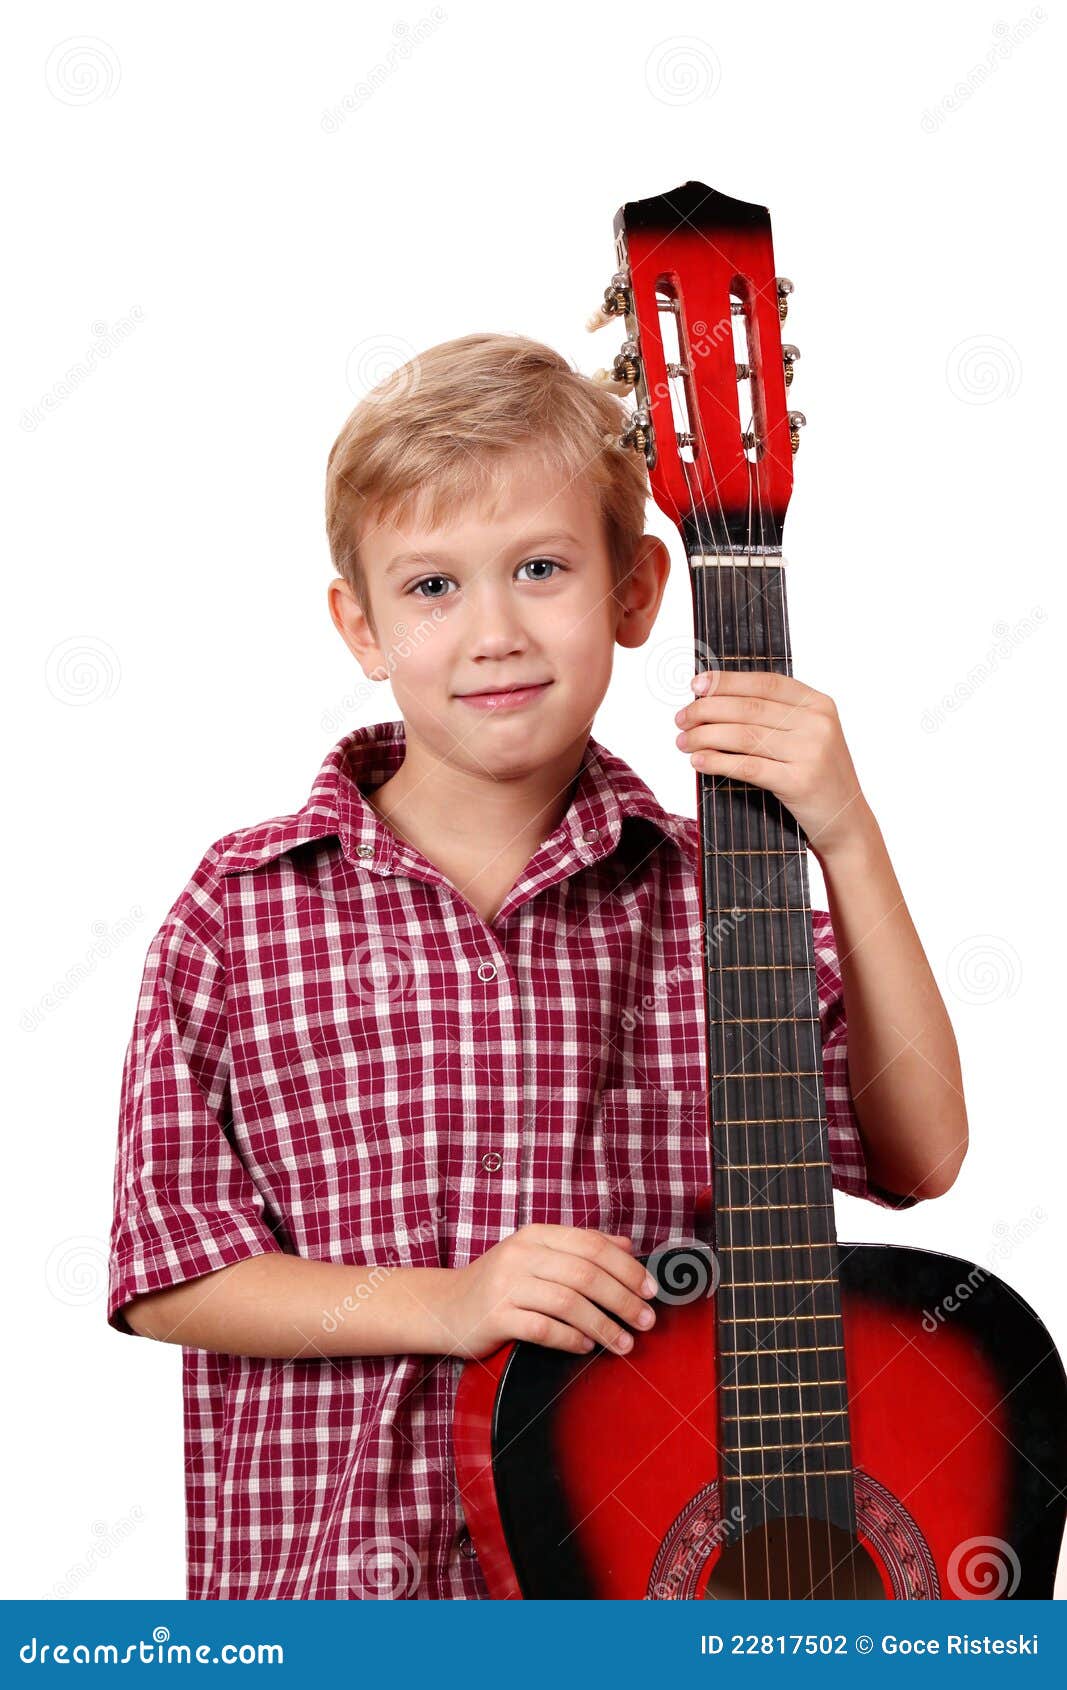 Купить гитару мальчику. Мальчик с гитарой. Мальчик с электрогитарой. Школьник с гитарой. Гитара для 12 лет мальчику.